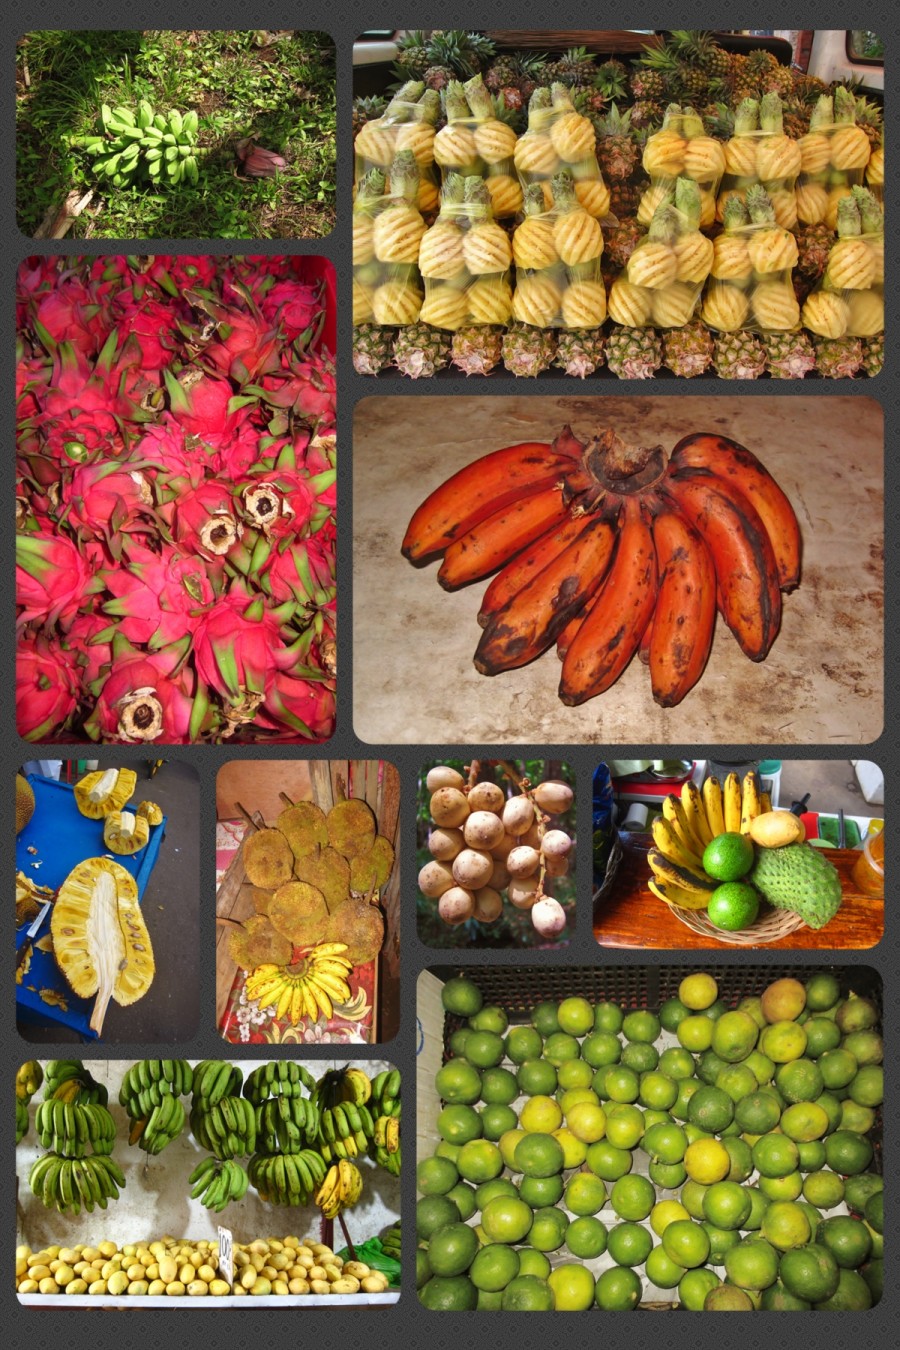 Przegląd tropikalnych owoców Azji, oraz niektórych pochodzących z Ameryki Południowej, jak np: dragon fruit i guyabano. Calamansi są w prawym dolnym rogu. Proszę zwrócić uwagę na czerwone banany, gdyż tej odmiany nigdy nie widziałem w Europie.